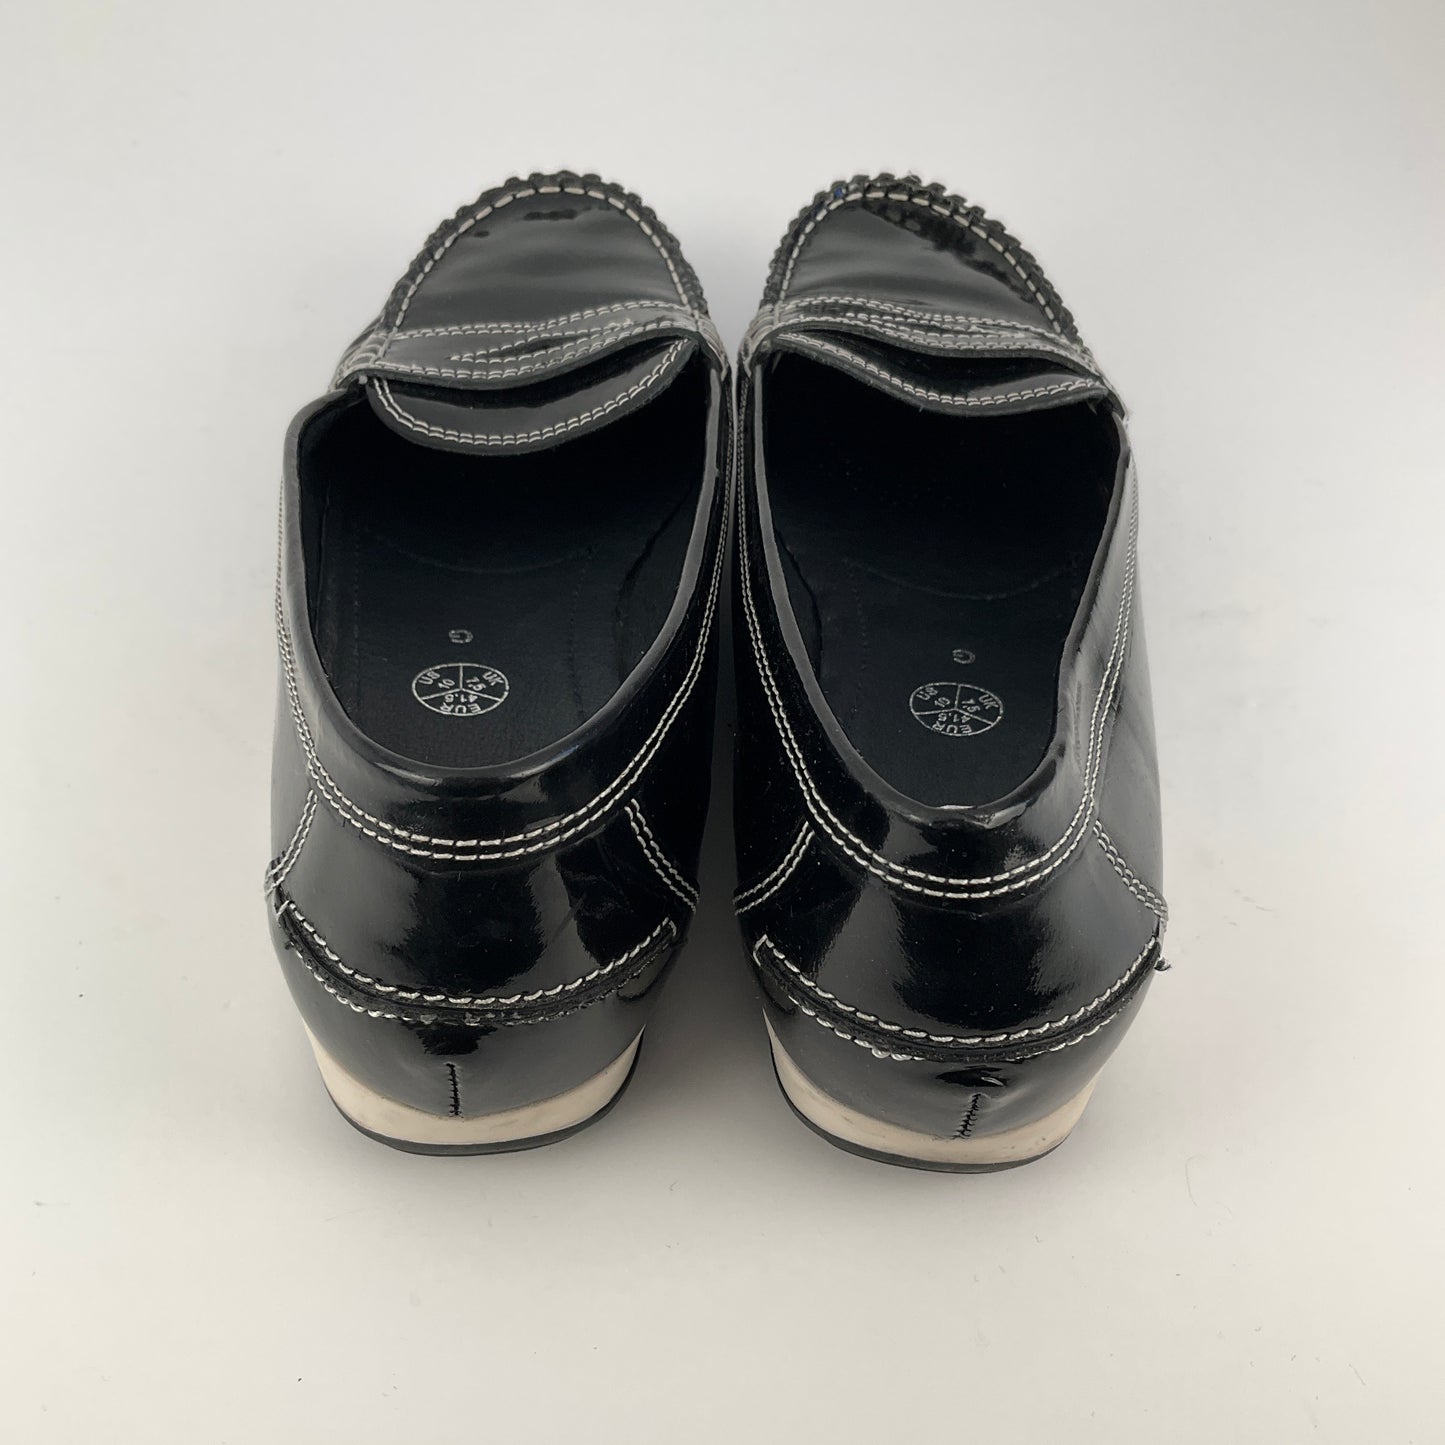 Ara - Black Leather Loafer - Size 41.5